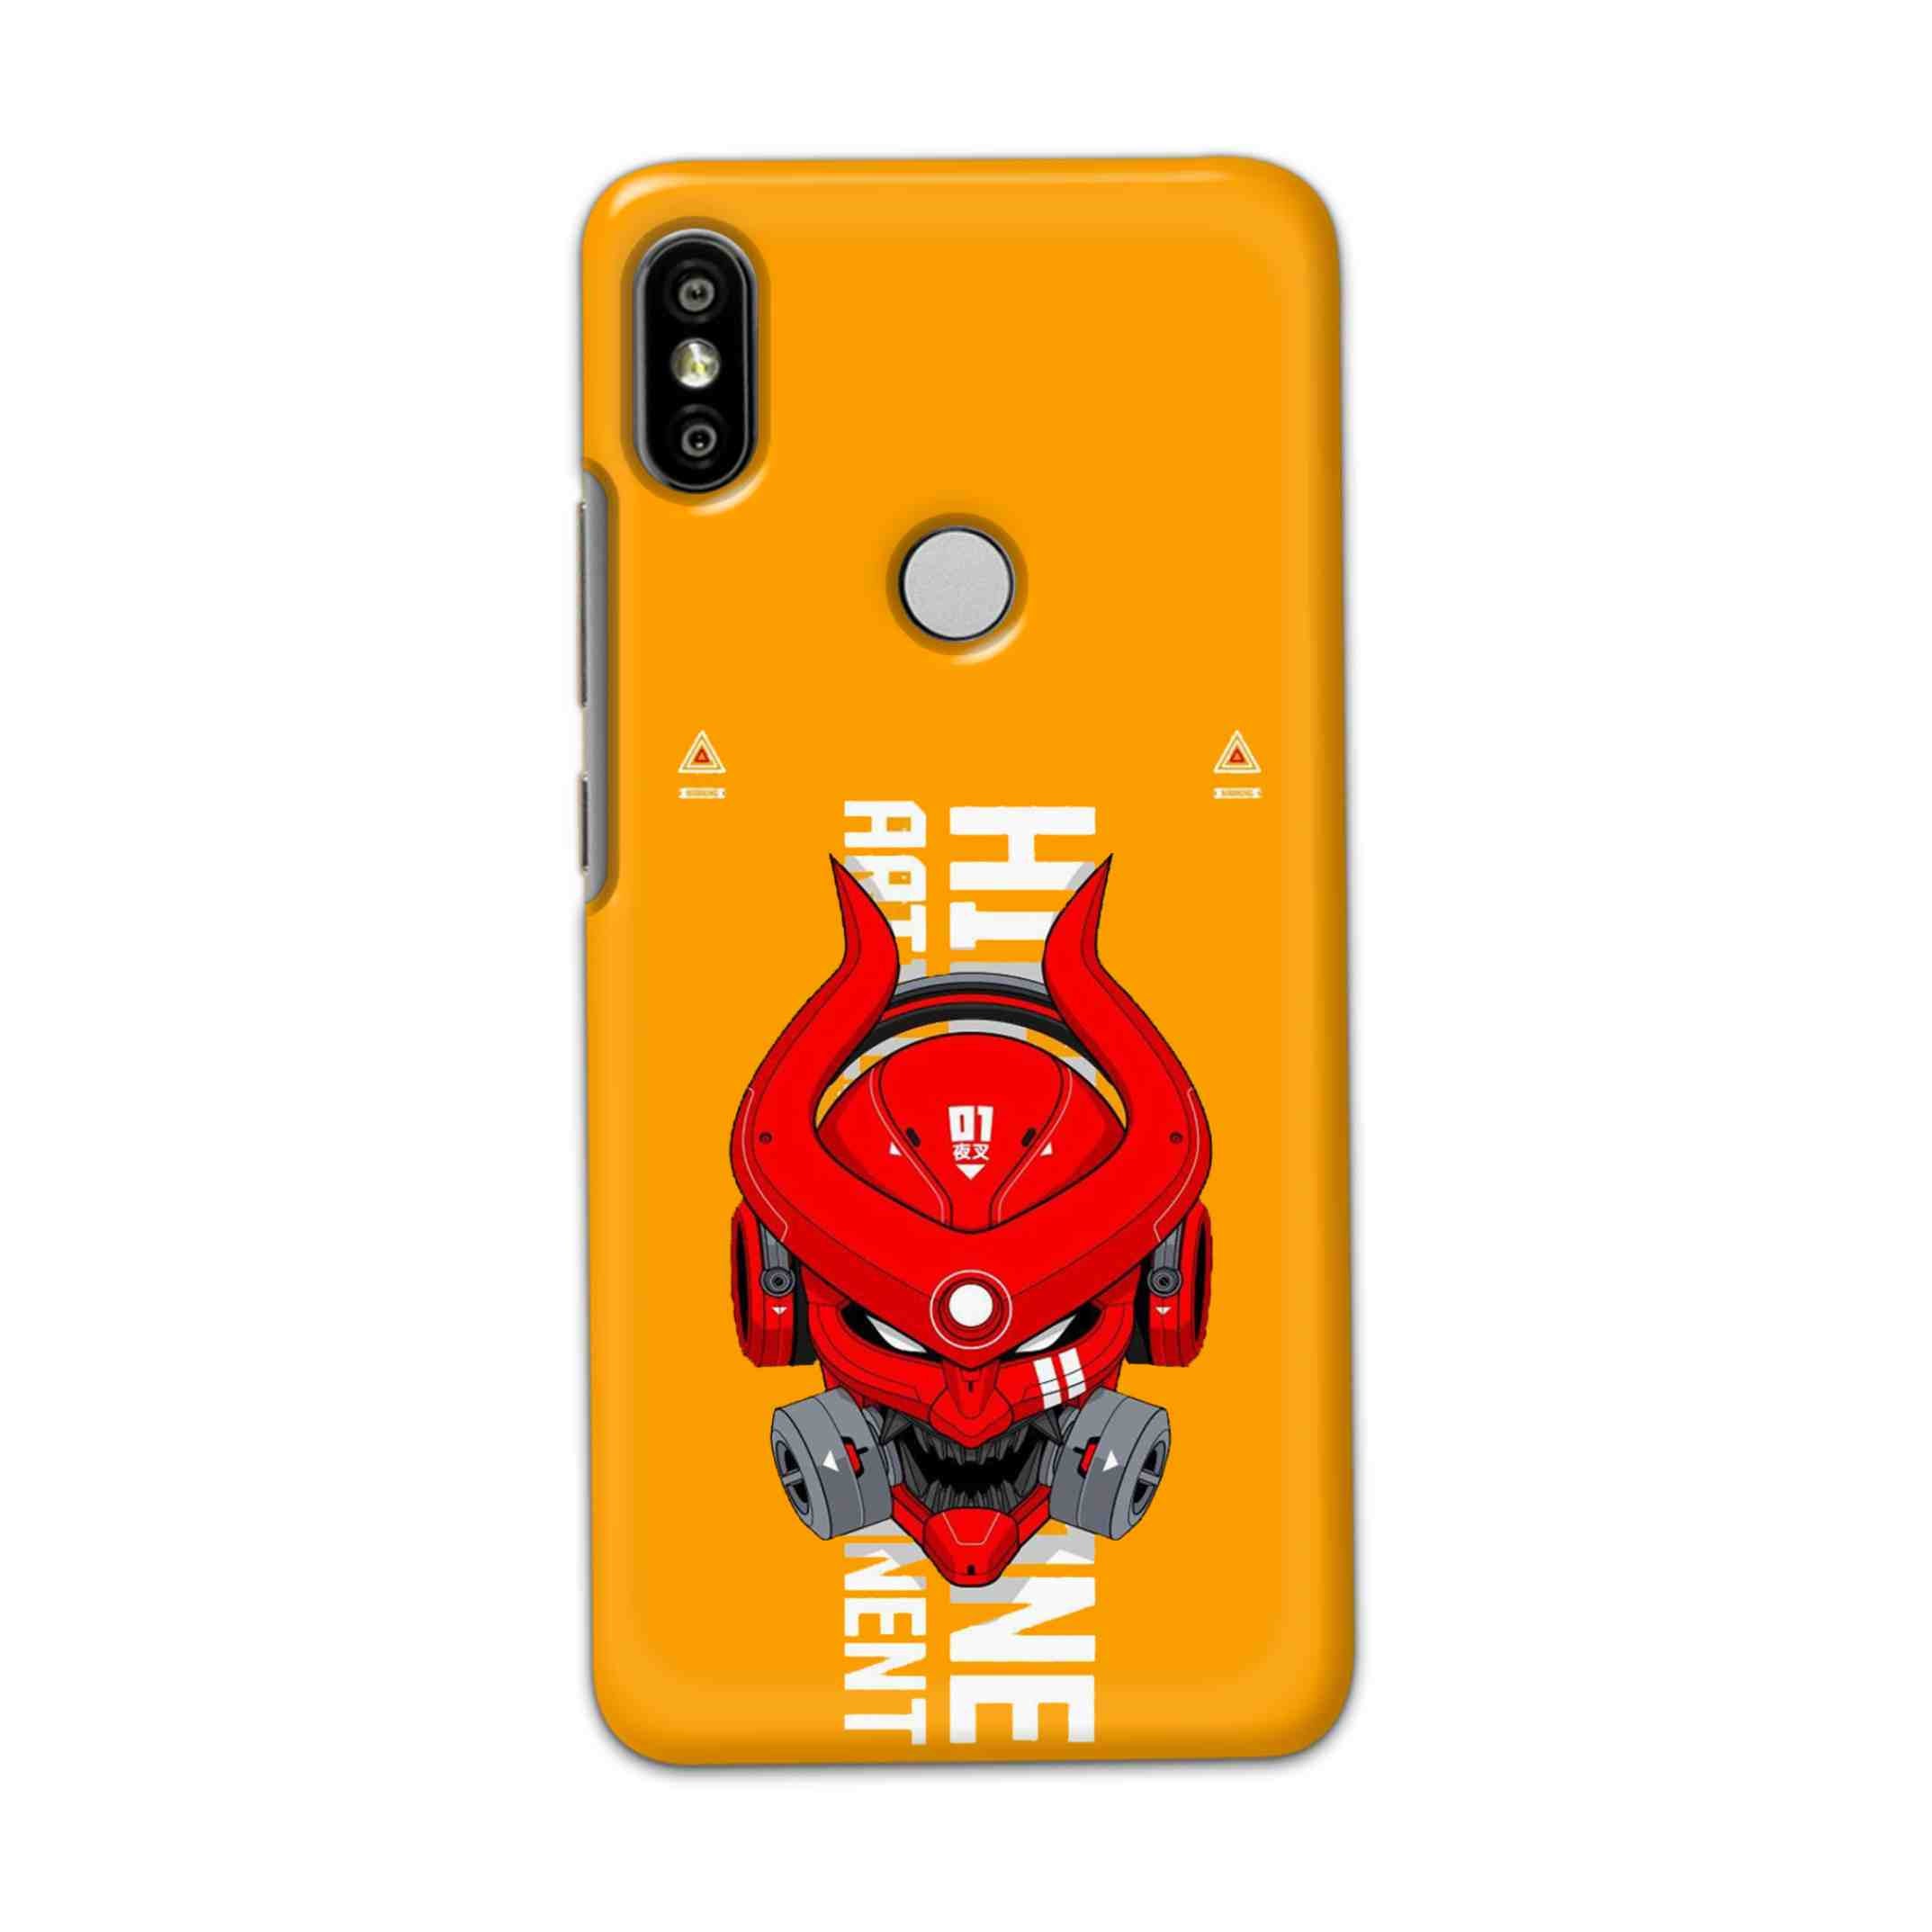 Buy Bull Skull Hard Back Mobile Phone Case Cover For Redmi S2 / Y2 Online